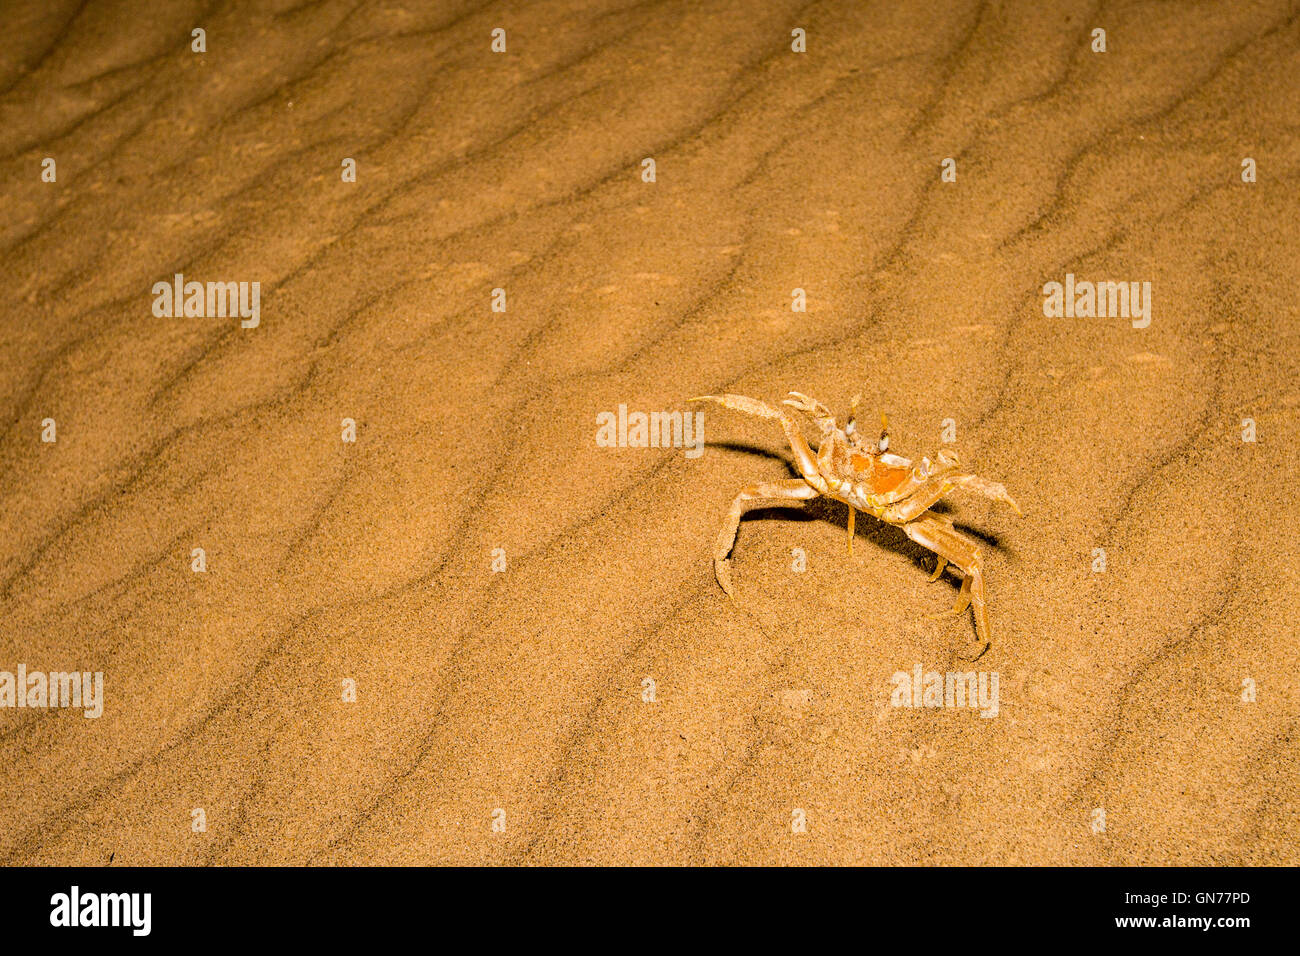 Tufted Granchi fantasma (Ocypode cursor) sulla sabbia. Granchi fantasma vivere sulle rive sabbiose nelle regioni tropicali e subtropicali in tutto il mondo Foto Stock